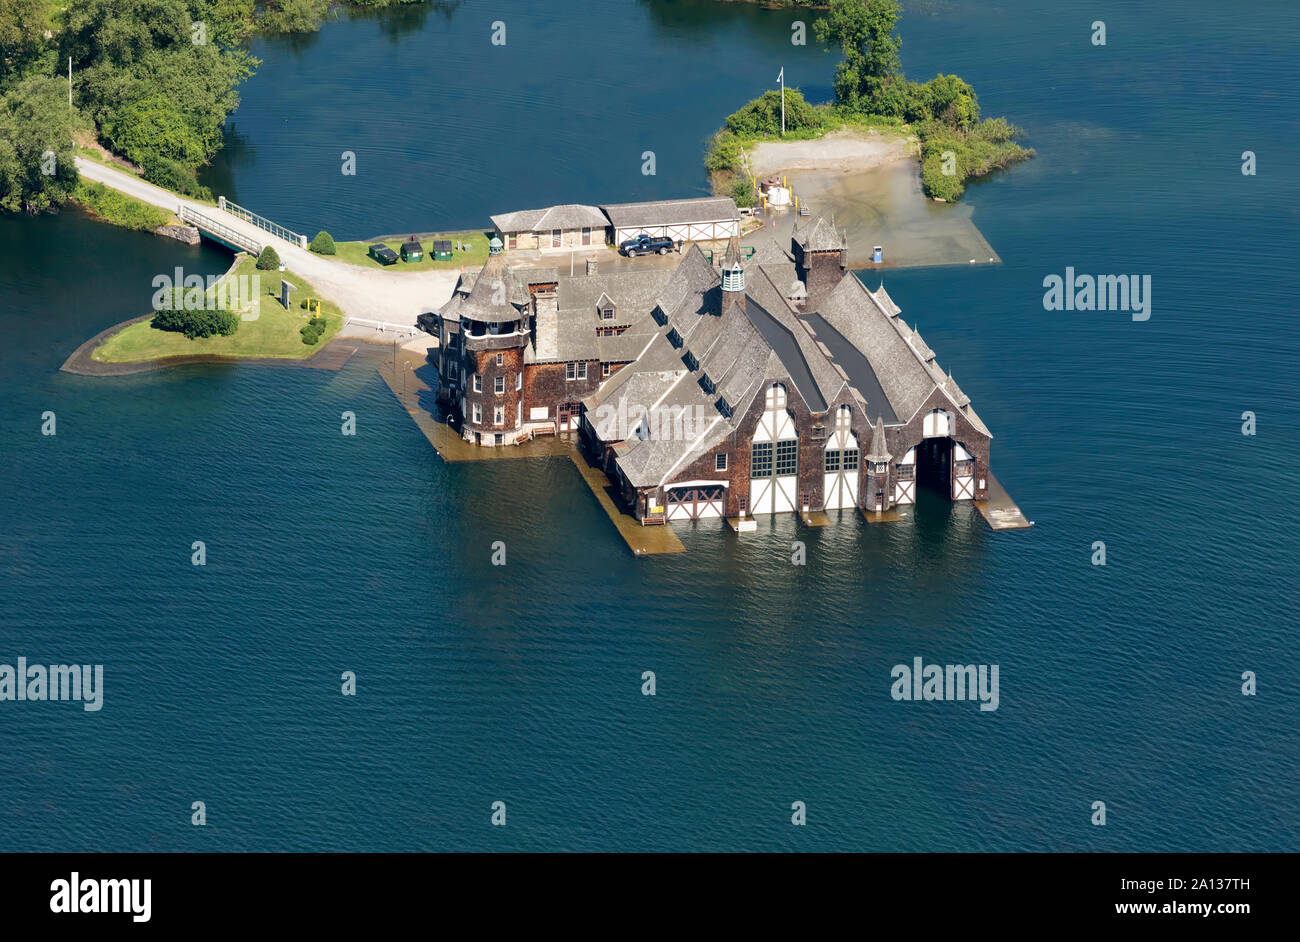 Yacht House, Boldt Castle, Heart Island, Thousand Islands, New York Stock Photo